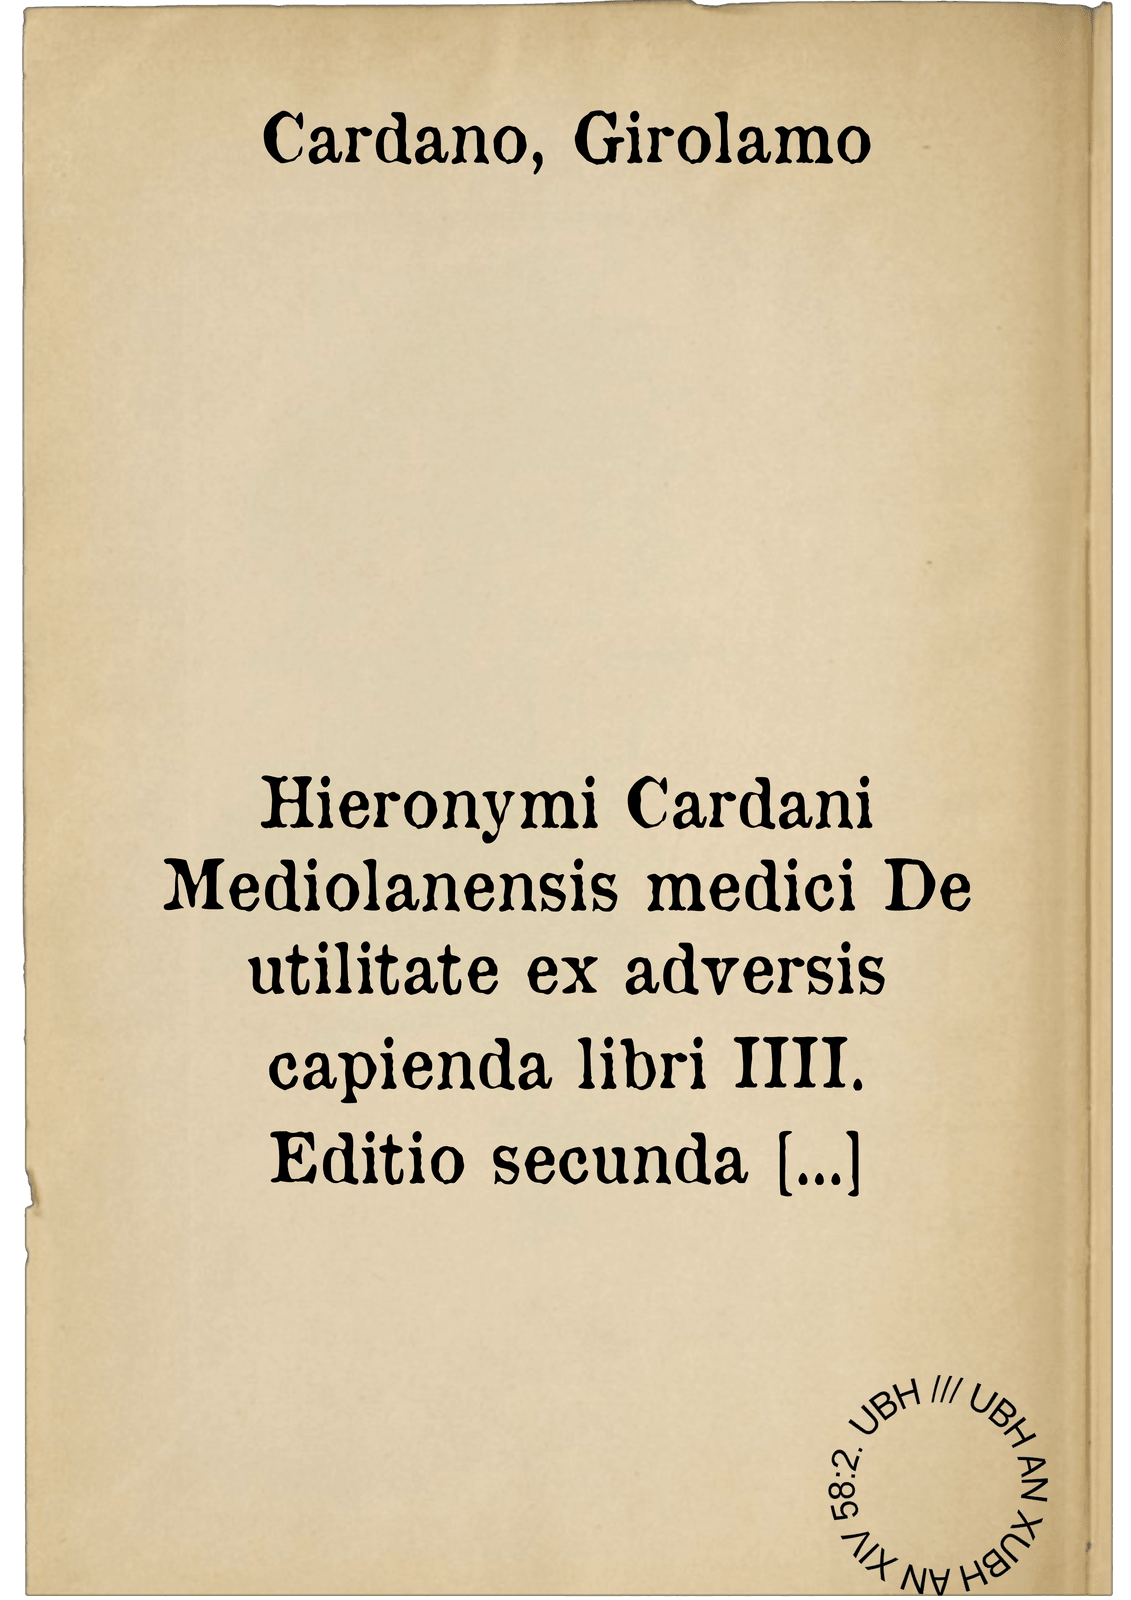 Hieronymi Cardani Mediolanensis medici De utilitate ex adversis capienda libri IIII. Editio secunda cum in prima vix umbra pulcherrimi argumenti reluceret. Eiusdem pro filio defensio